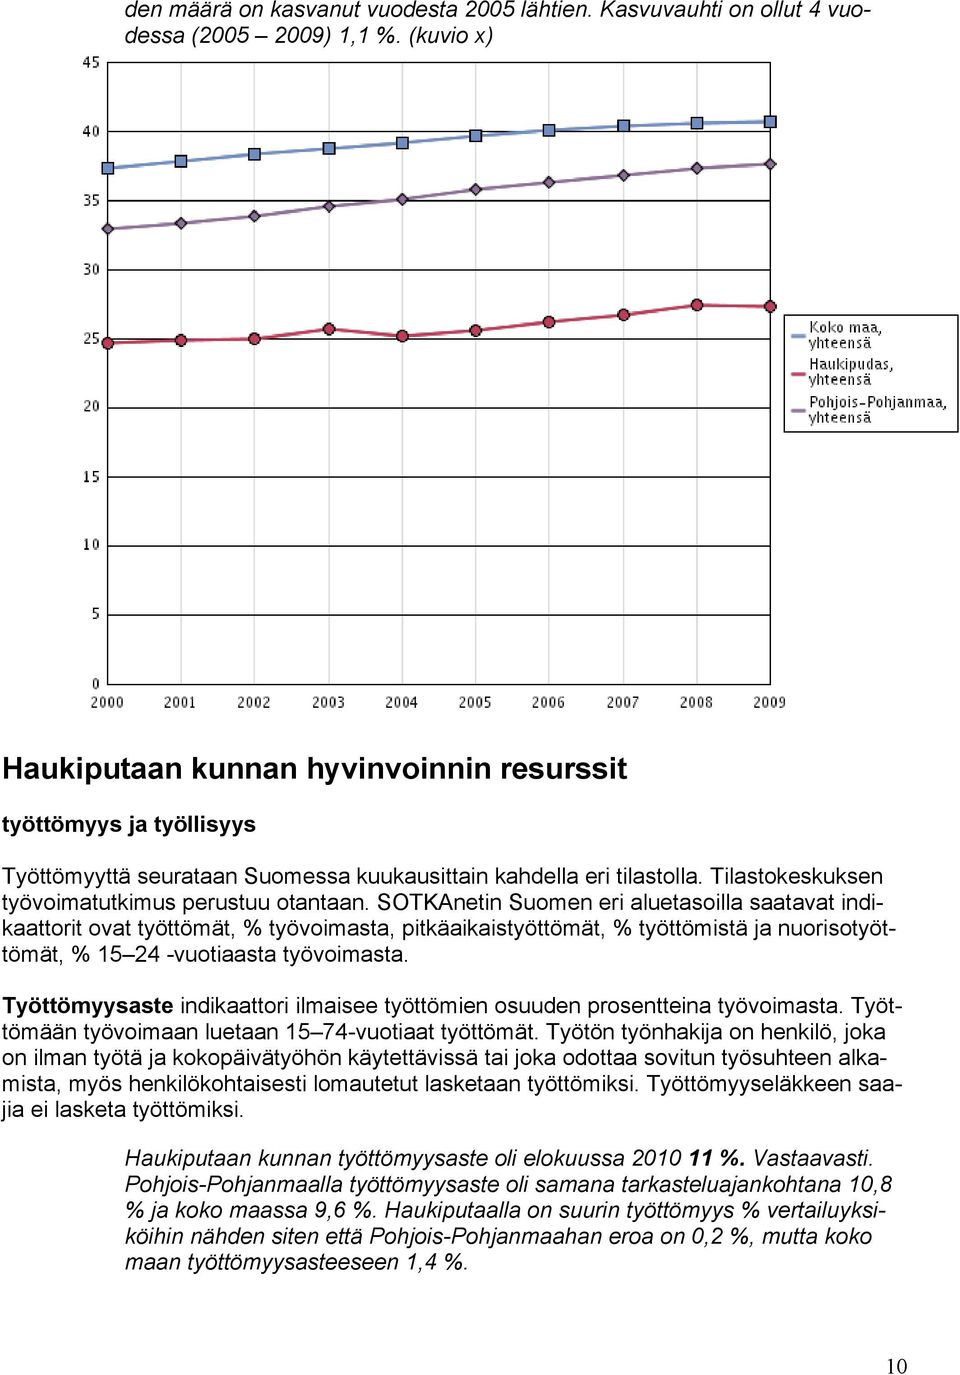 SOTKAnetin Suomen eri aluetasoilla saatavat indikaattorit ovat työttömät, % työvoimasta, pitkäaikaistyöttömät, % työttömistä ja nuorisotyöttömät, % 15 24 -vuotiaasta työvoimasta.